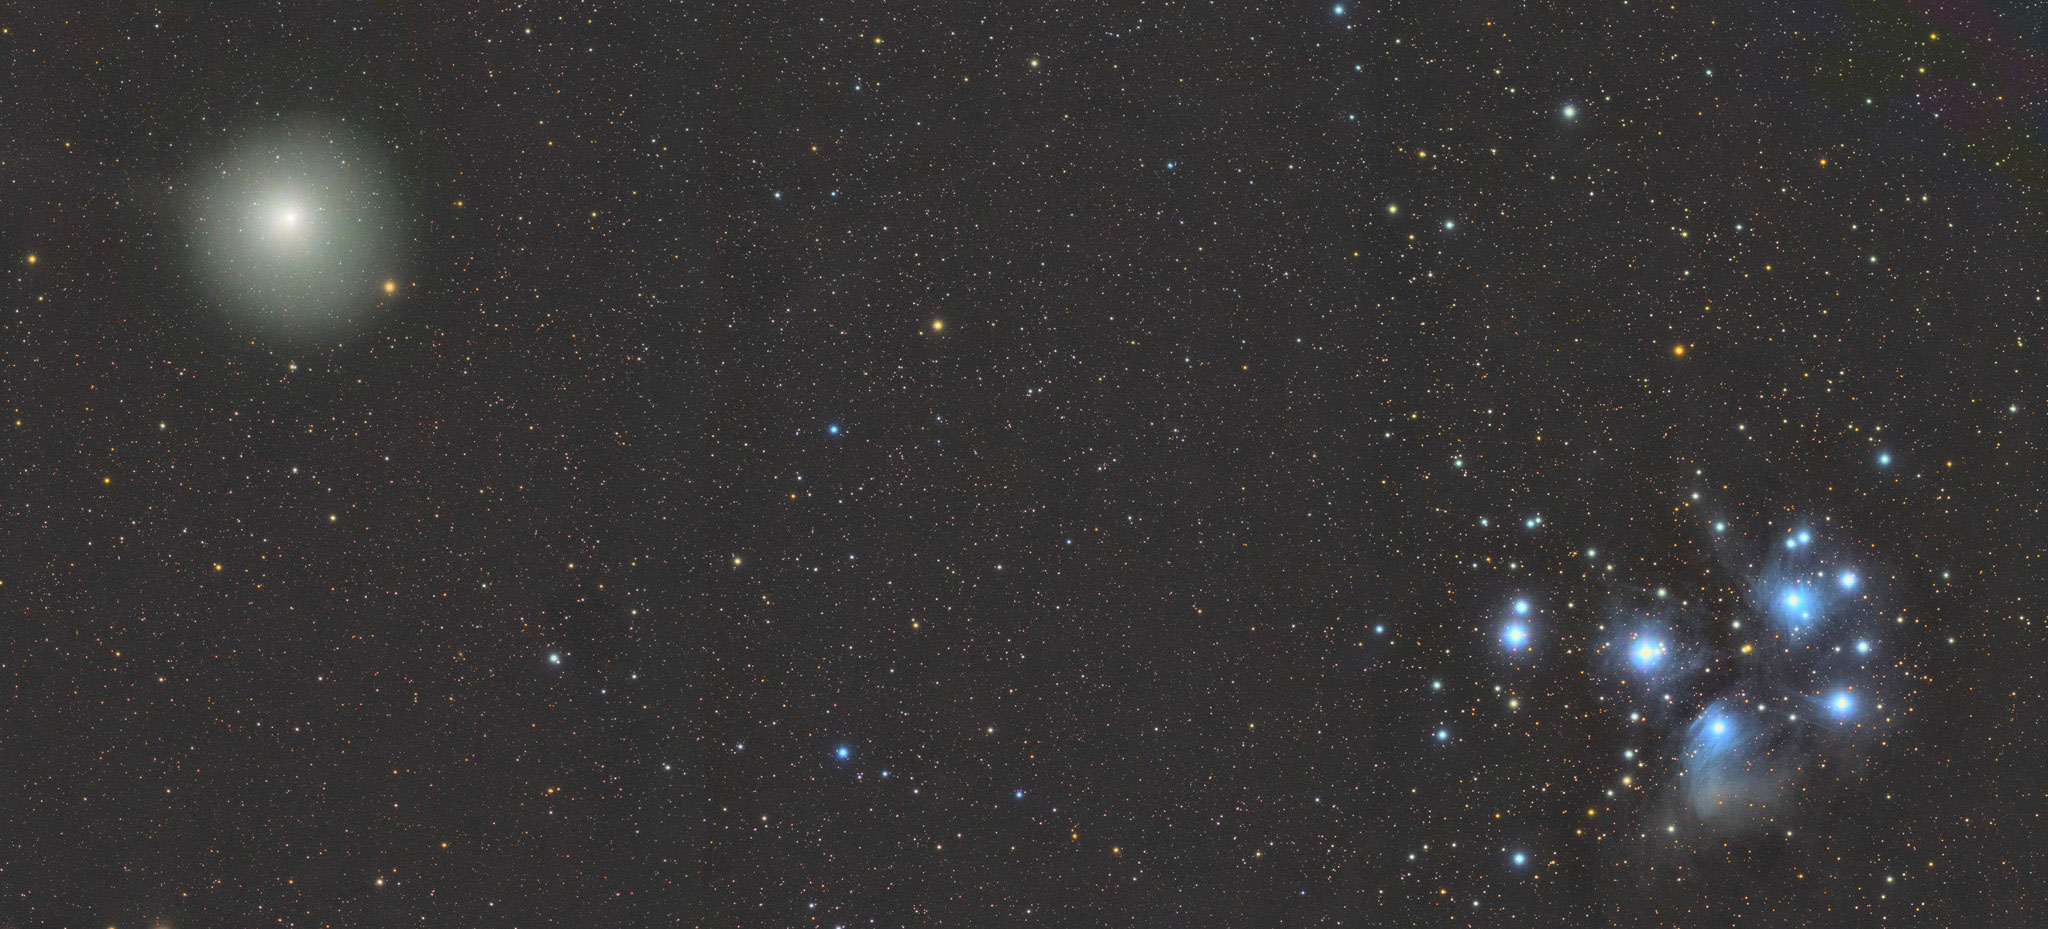 M45 et 46P/Wirtanen, Fabien, lunette 71, Sadr Chili